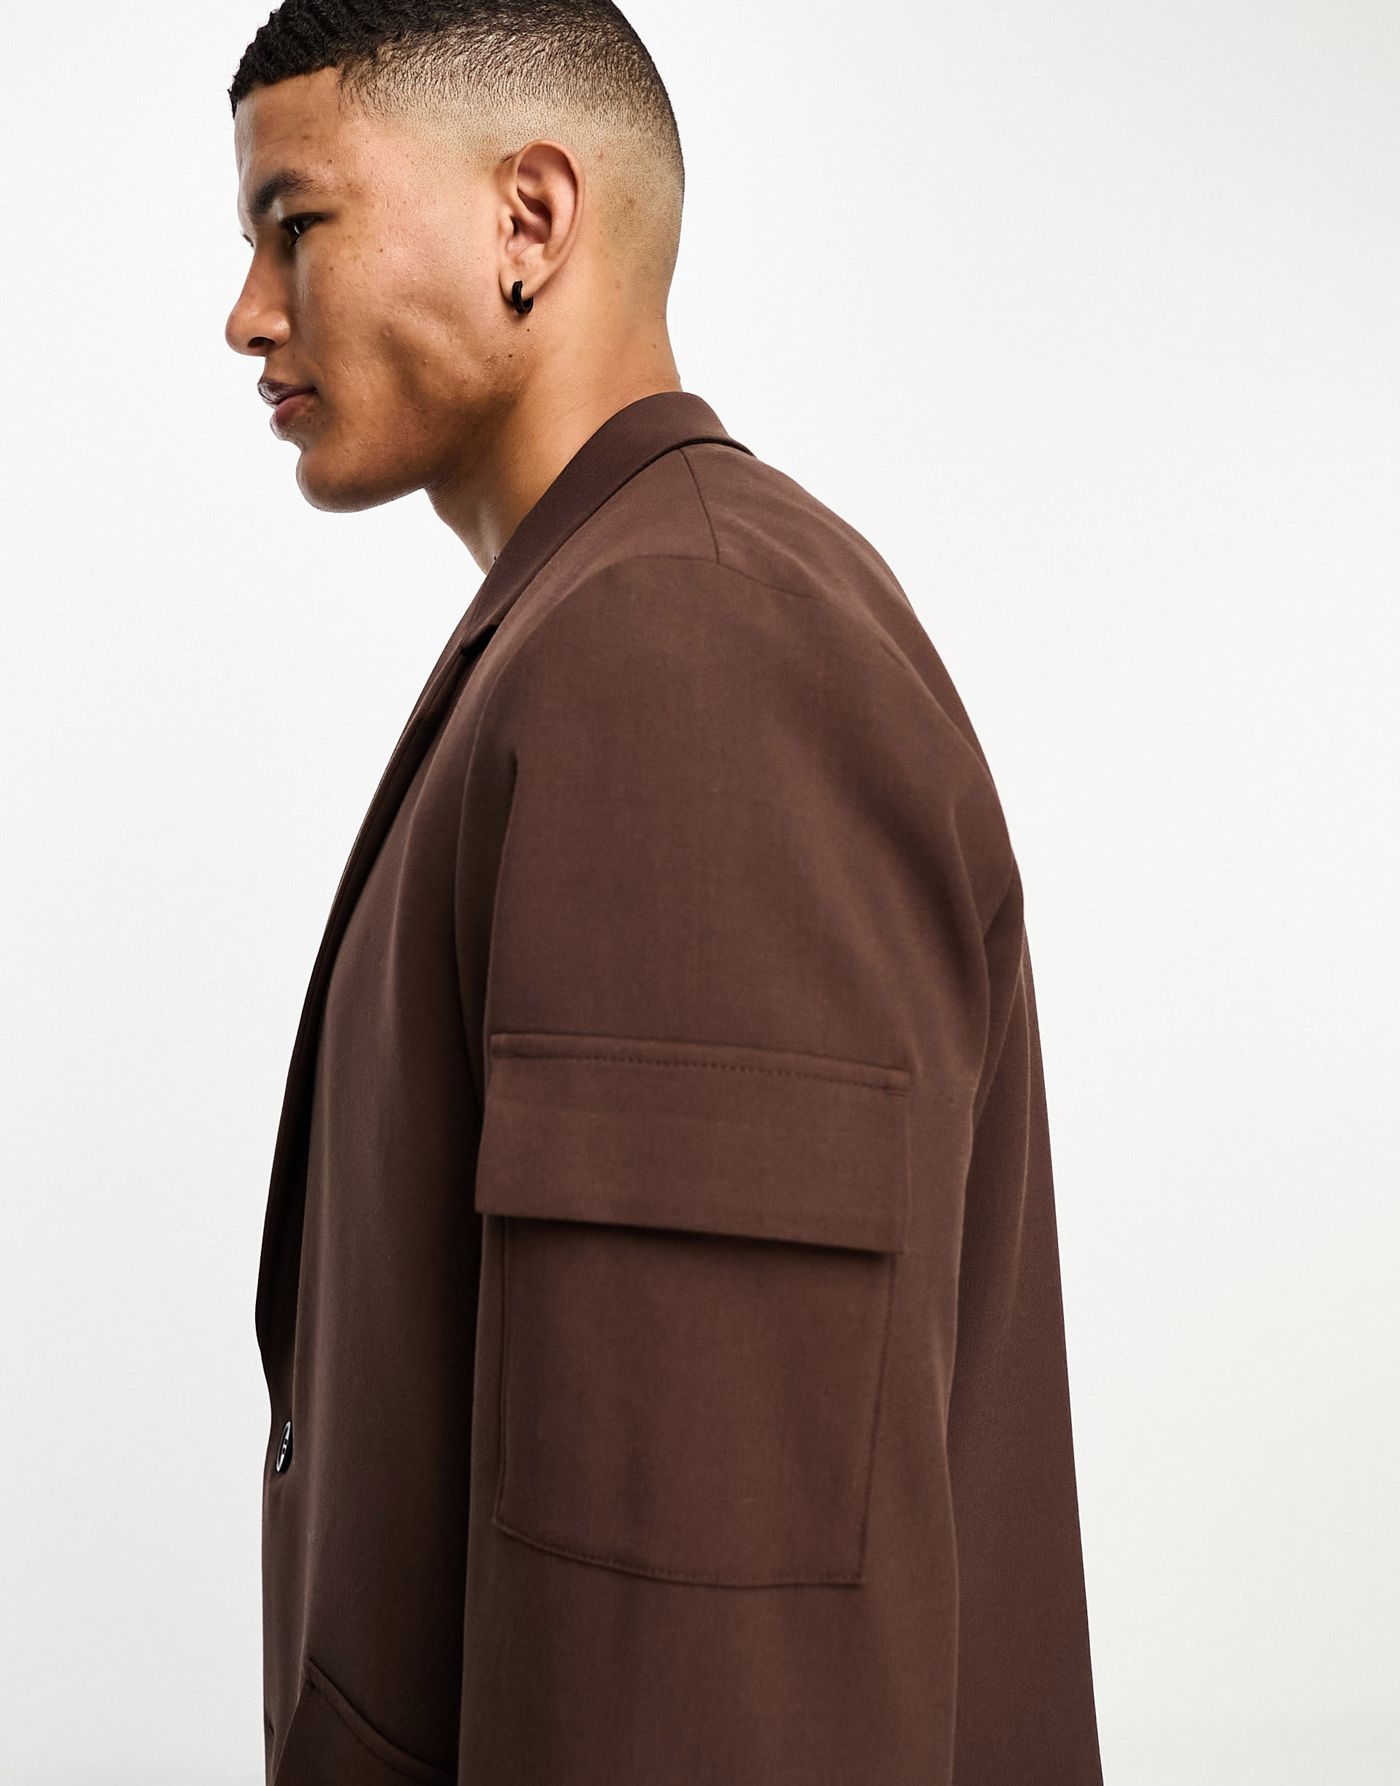 ASOS DESIGN oversized suit jacket in dark brown